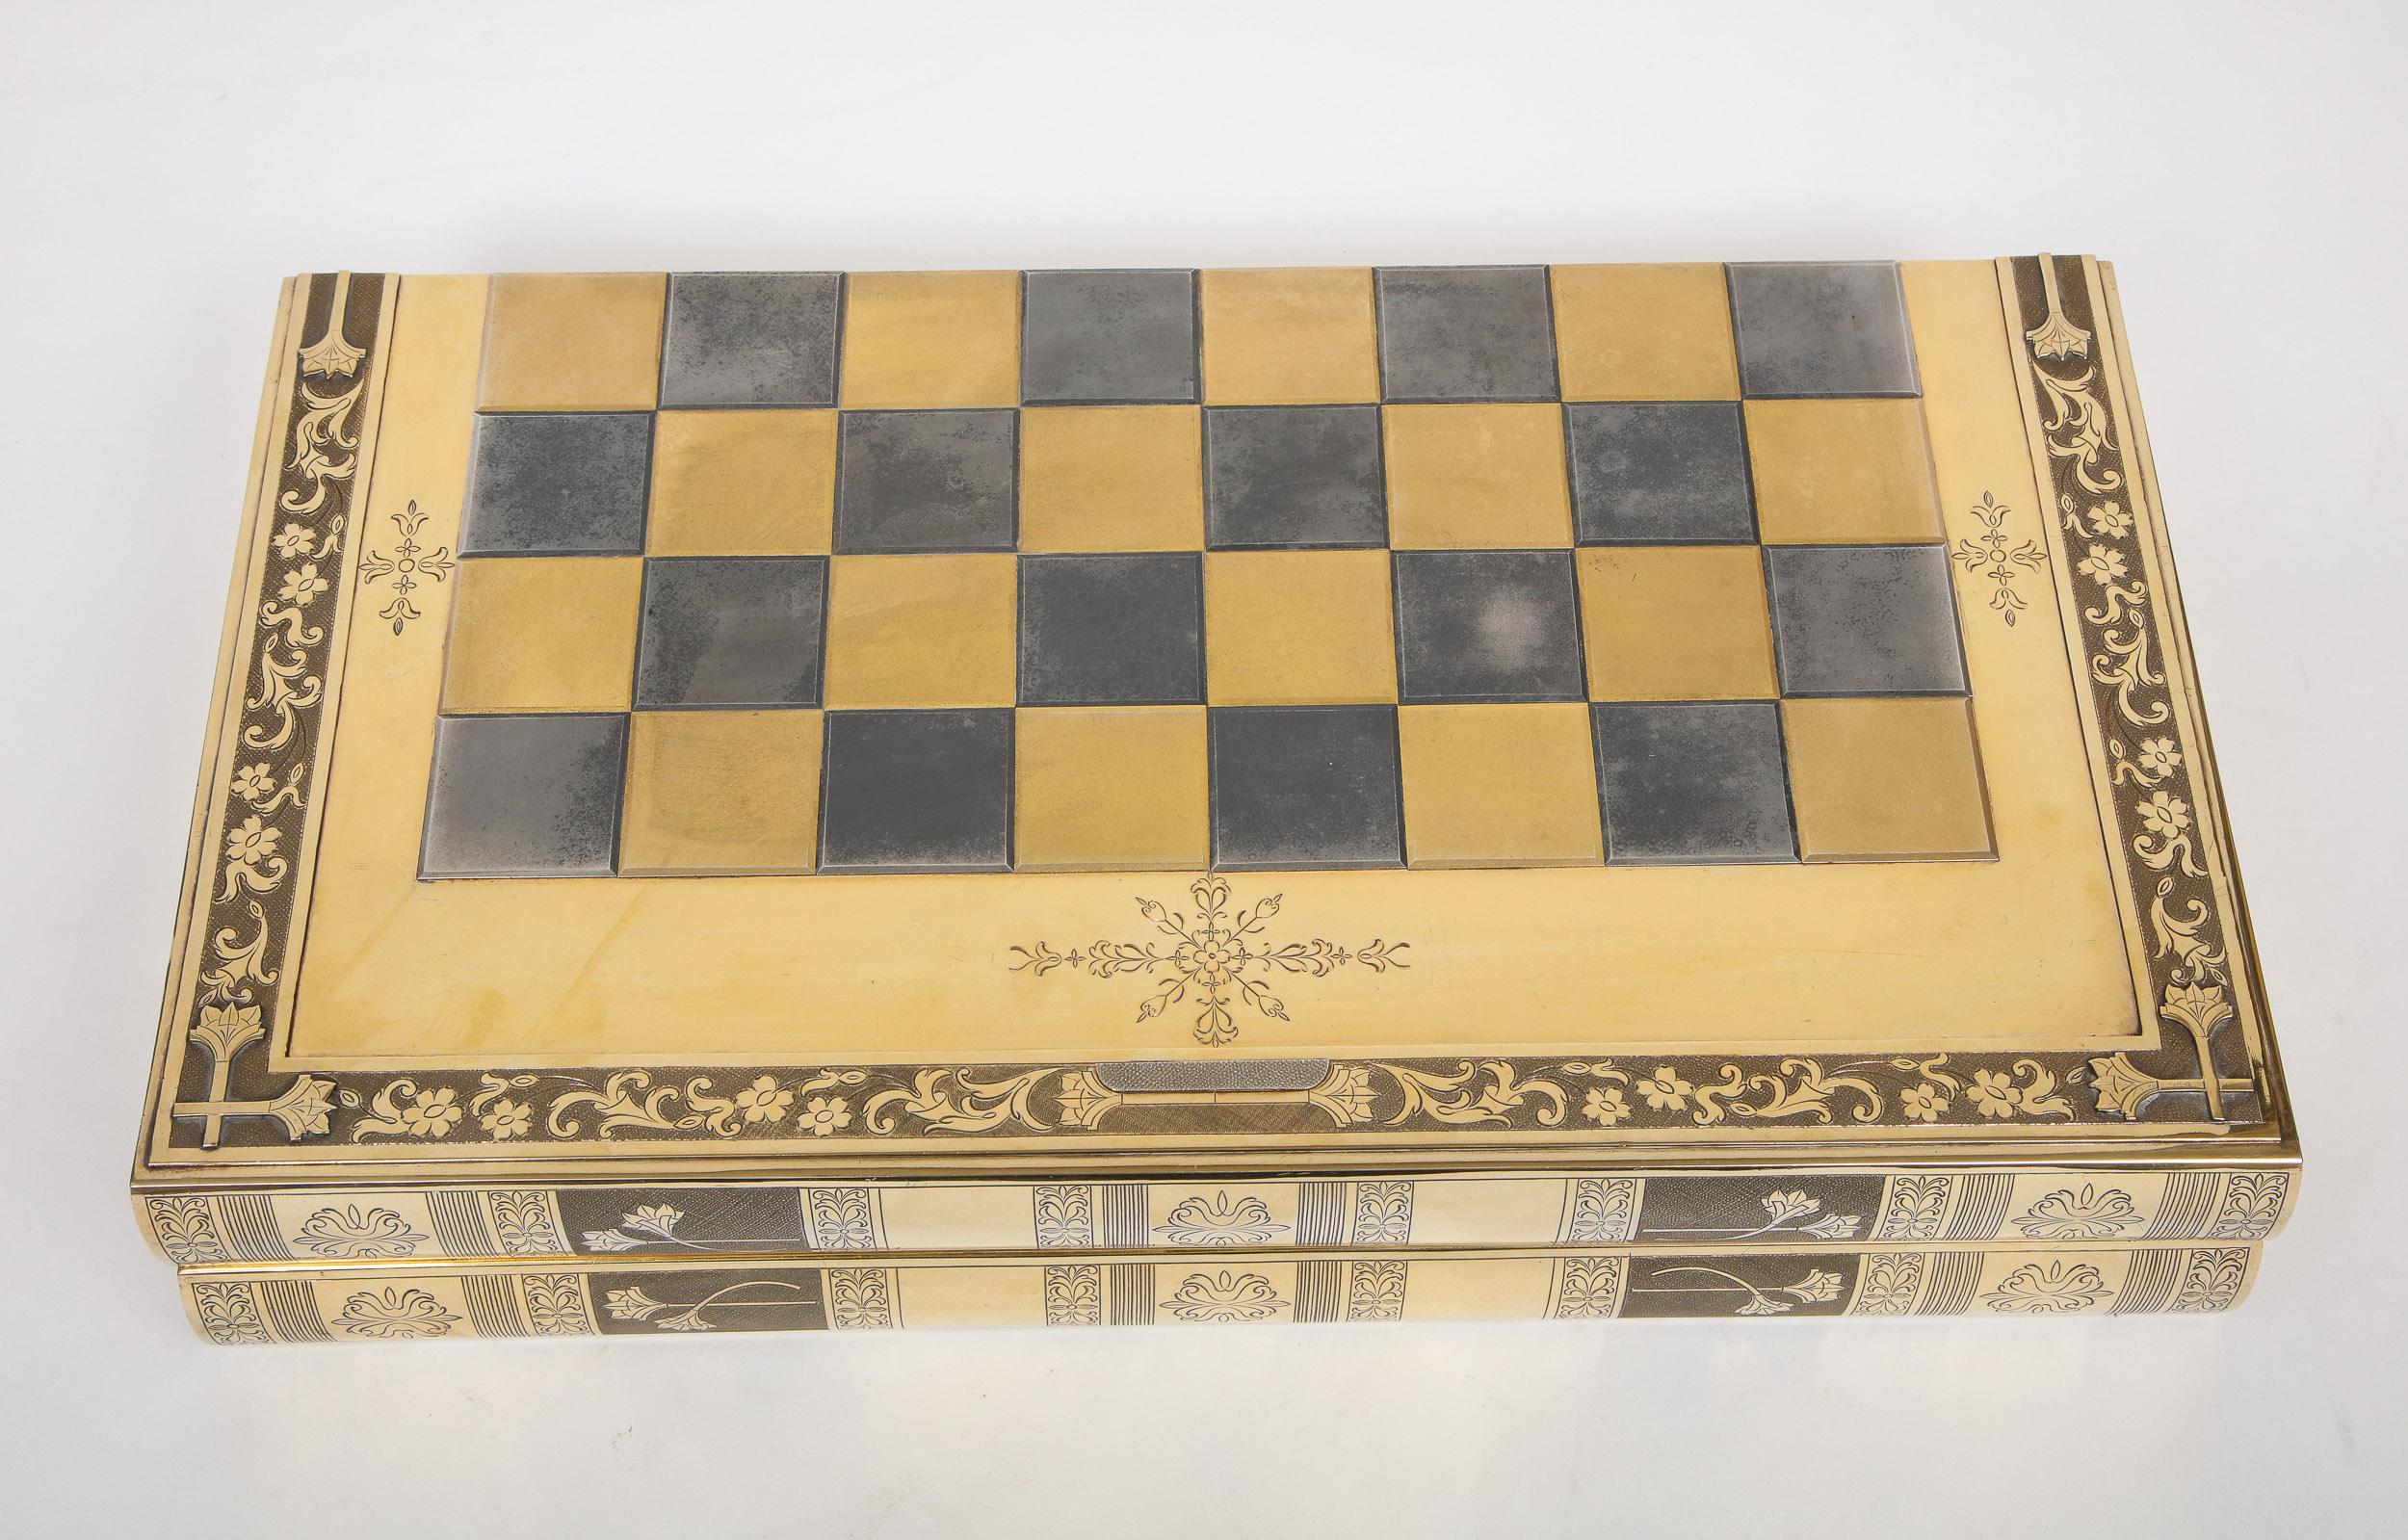 Rare English Silver-Gilt Book-Form Chess and Backgammon Game Board, circa 1976 For Sale 2